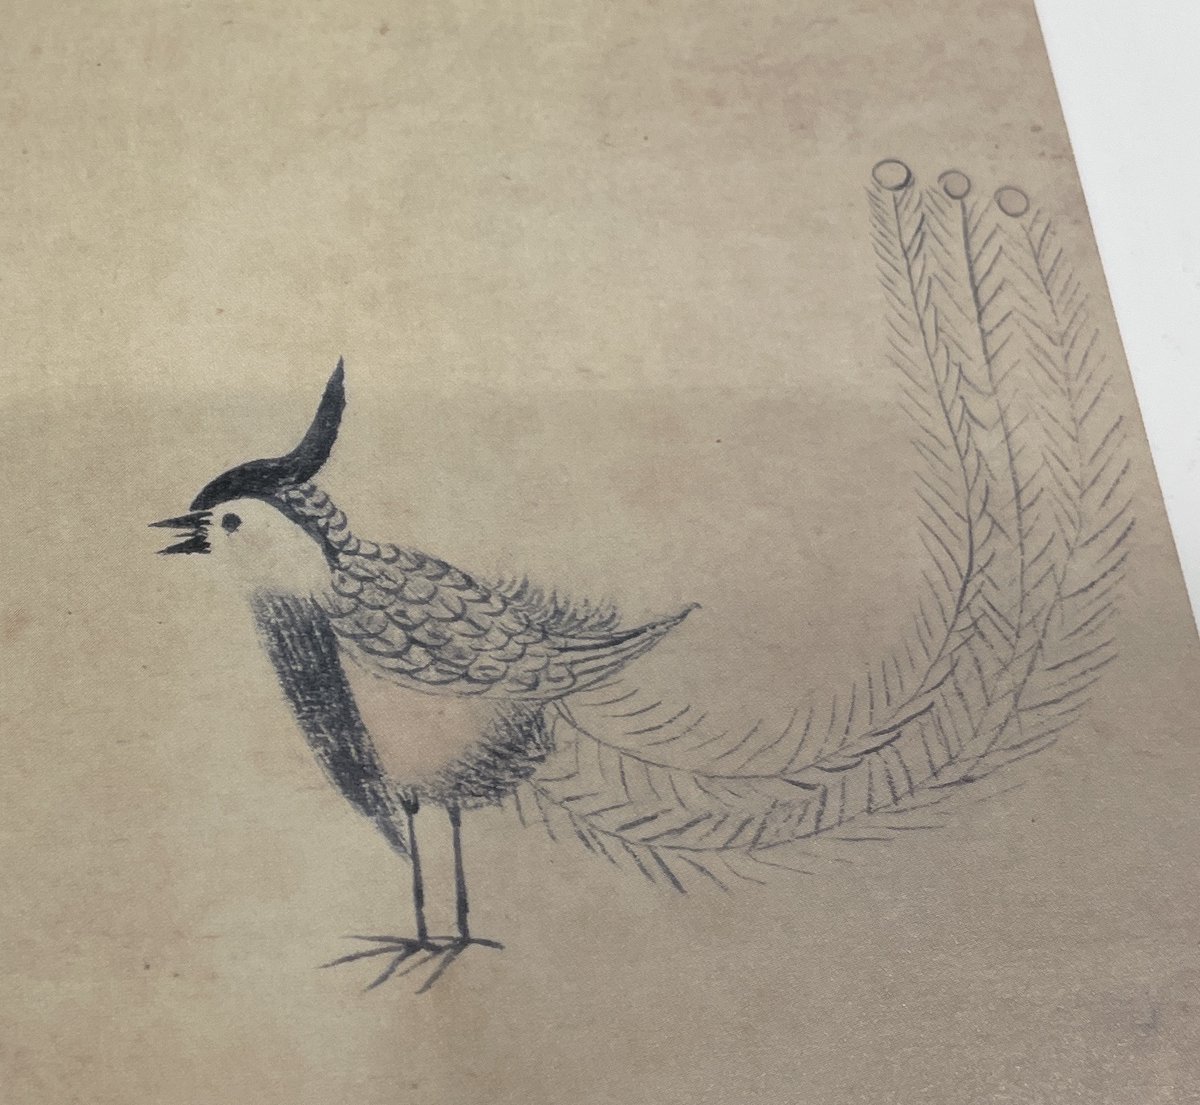 三代将軍の徳川家光は絶妙にゆるい味わいの動物の絵を描いたことで知られていて、左の木兎図が有名。右の鳳凰図は俗に「ピヨピヨ鳳凰」と呼ばれる(鳳凰と言い切る勇気) 